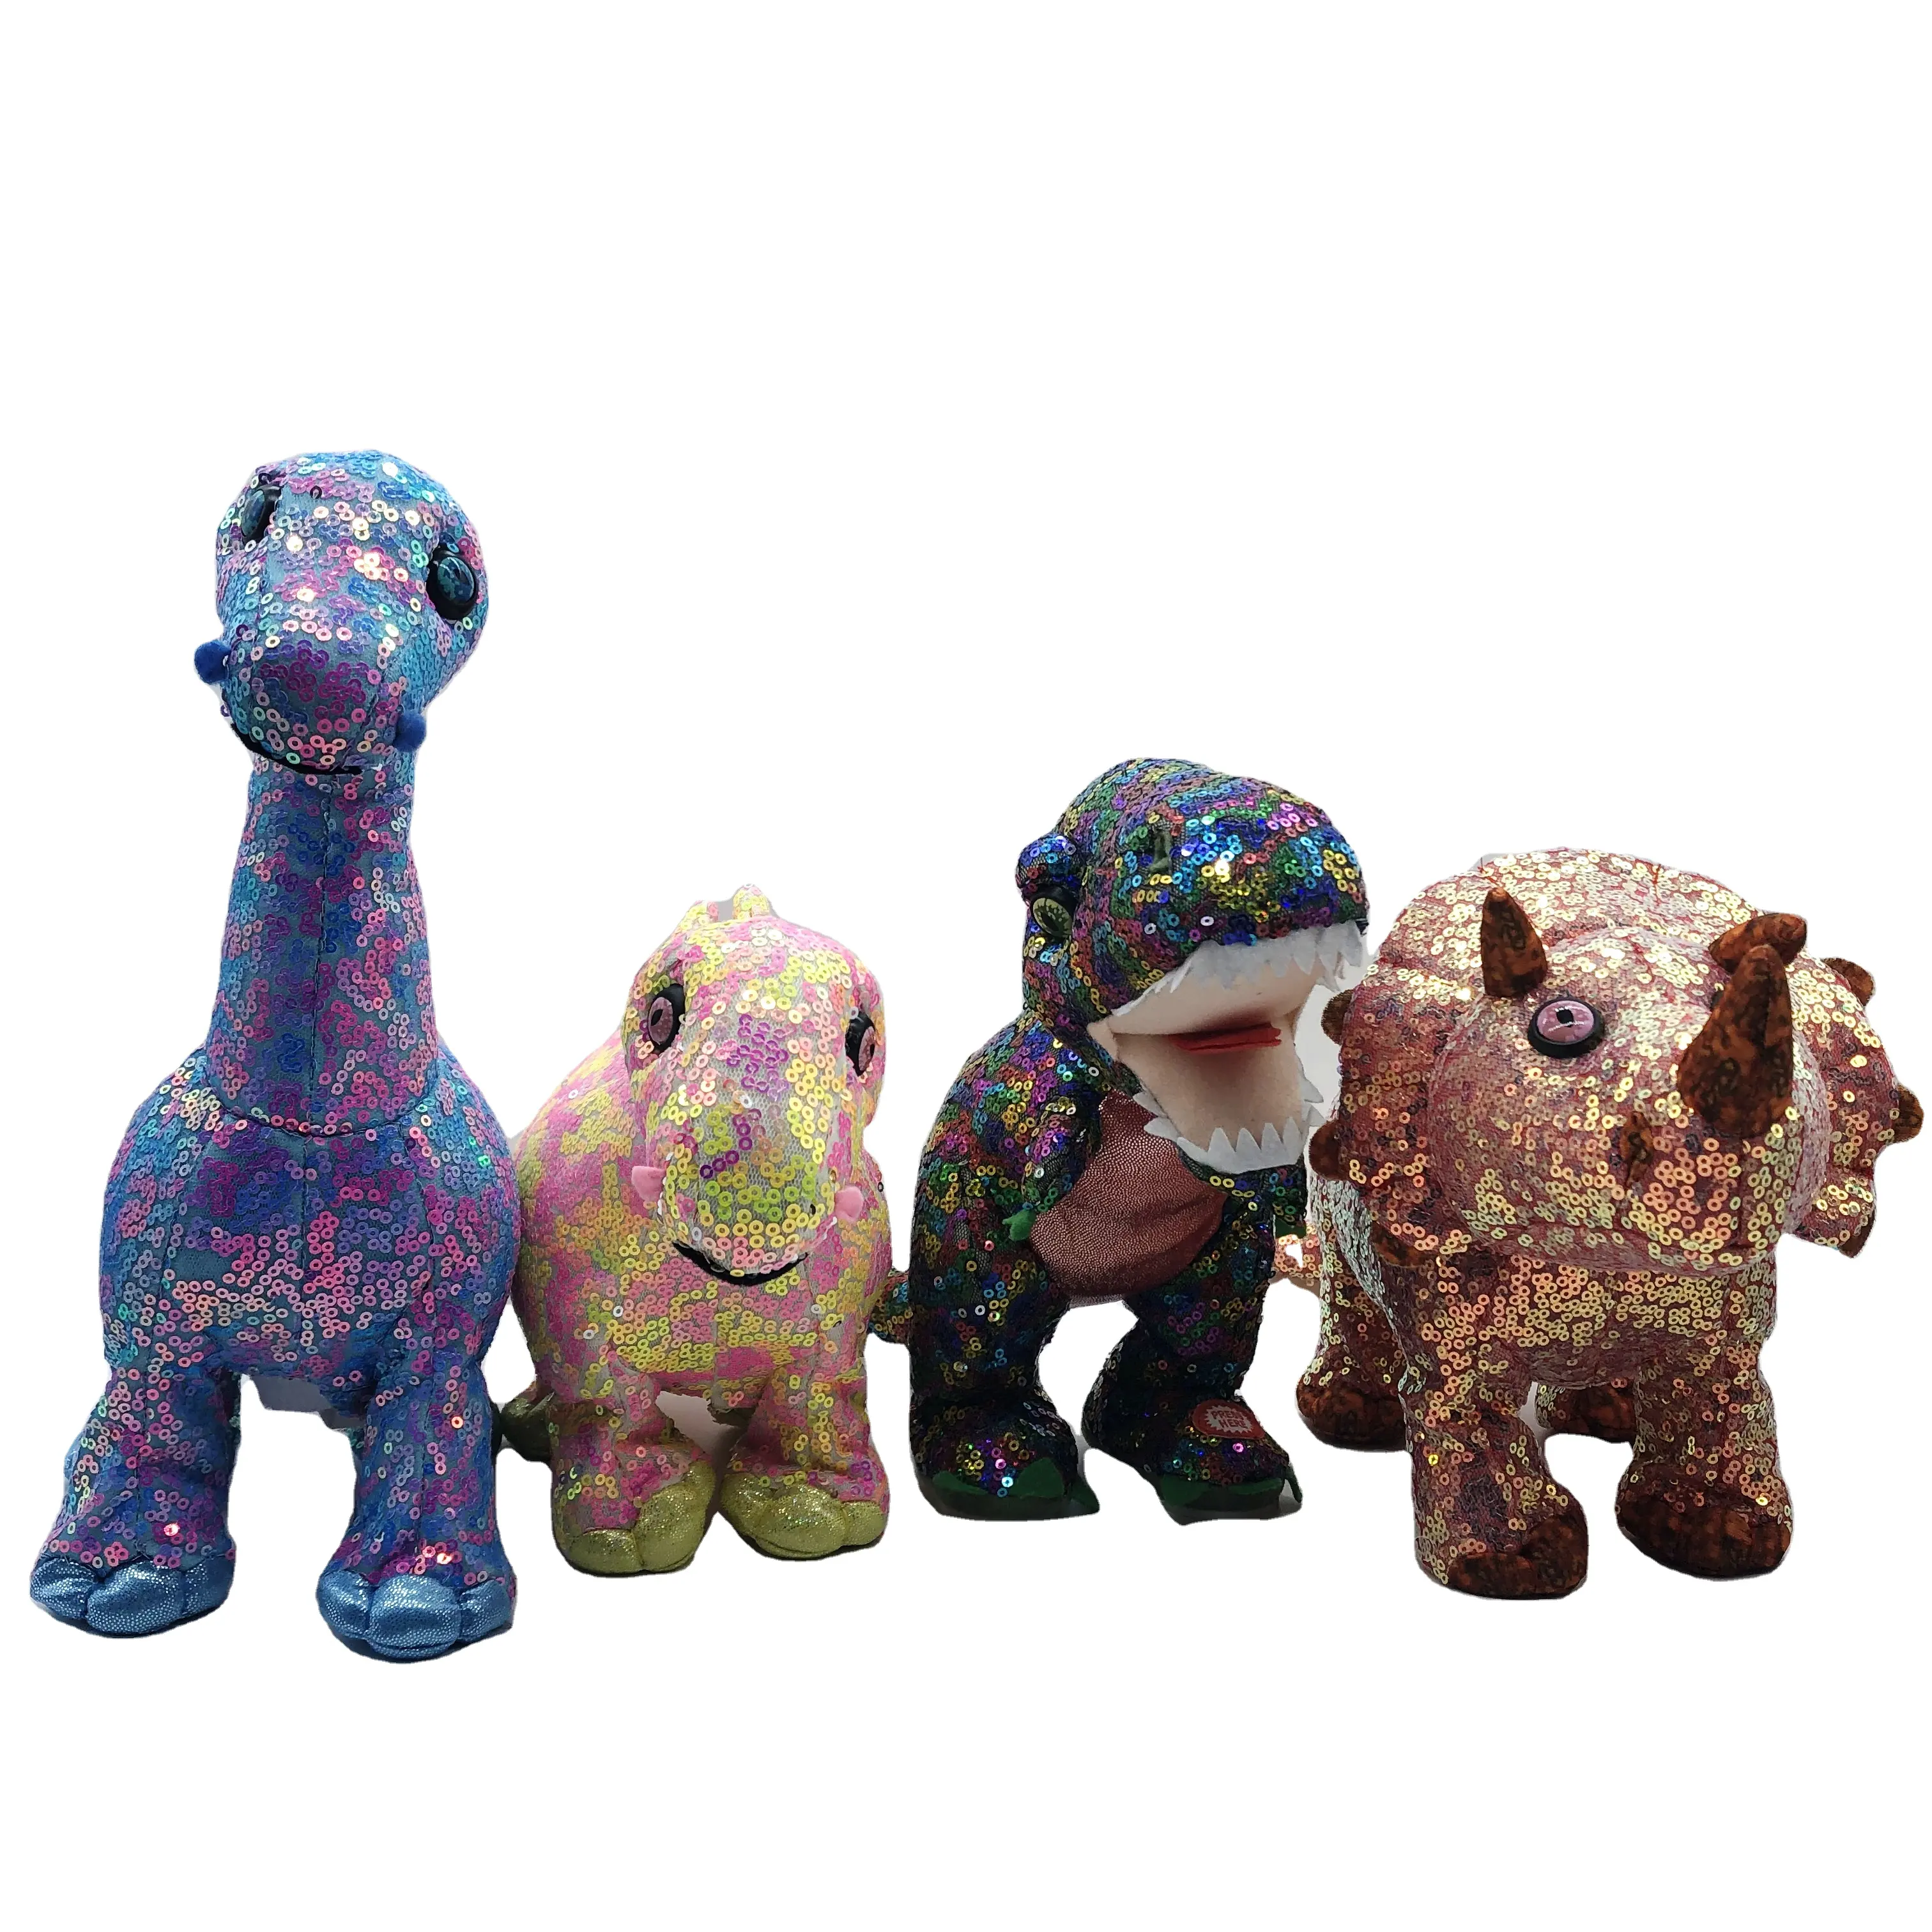 Brinquedo de pelúcia criativo para crianças, tecido de pelúcia com lantejoulas coloridas e dinossauro elétrico criativo para cantar e dançar